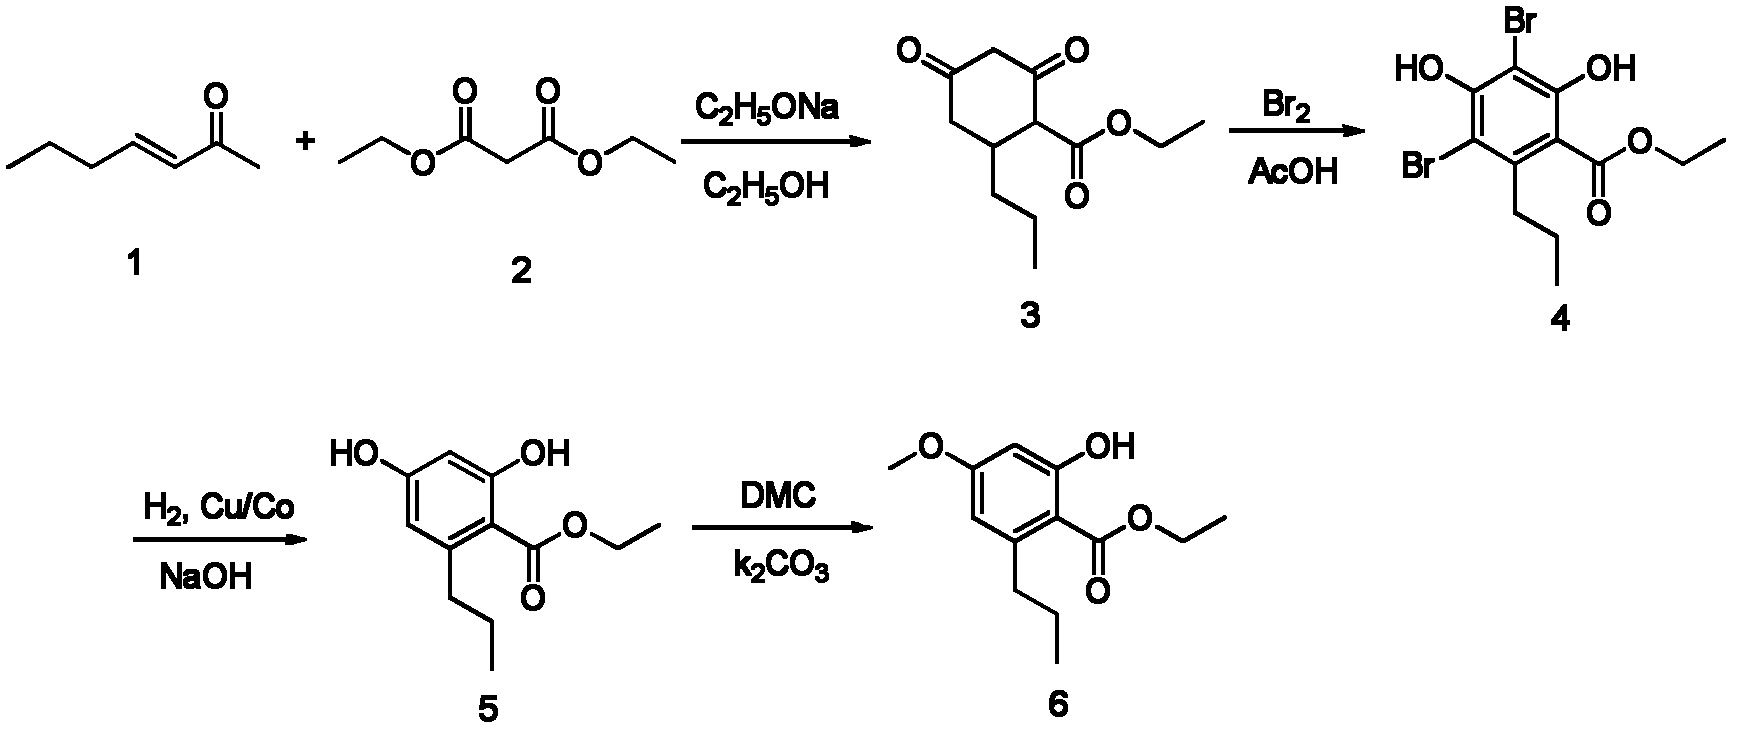 Method for synthesizing ethyldivaricatinate and application of ethyldivaricatinate